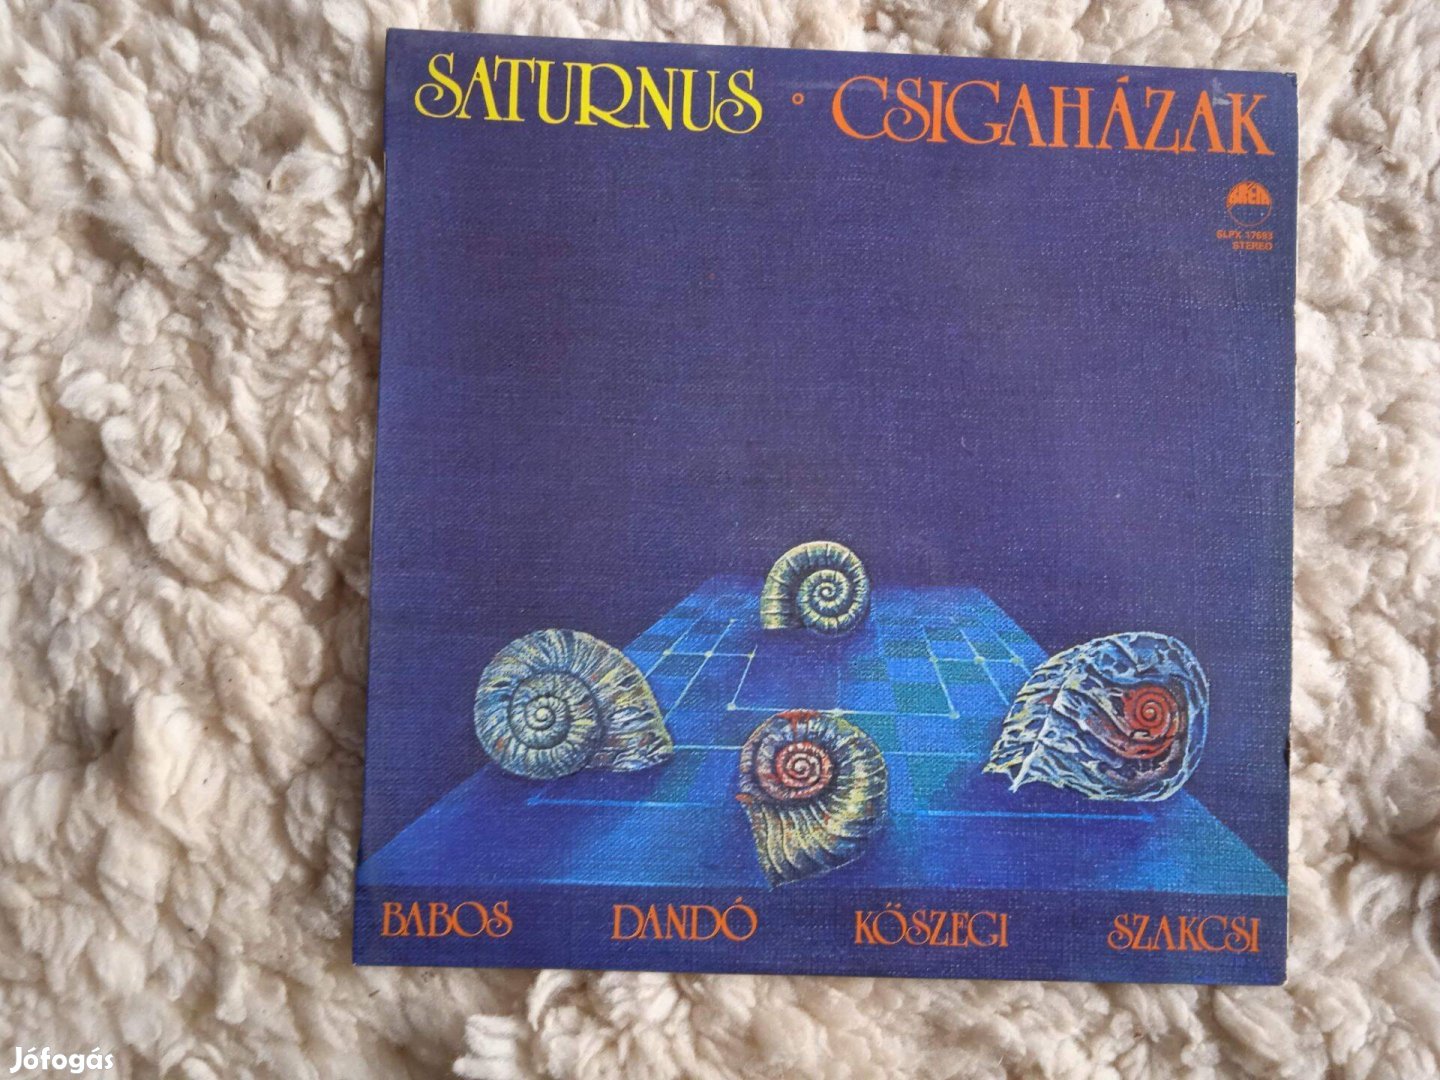 Saturnus: Csigaházak - eredeti LP